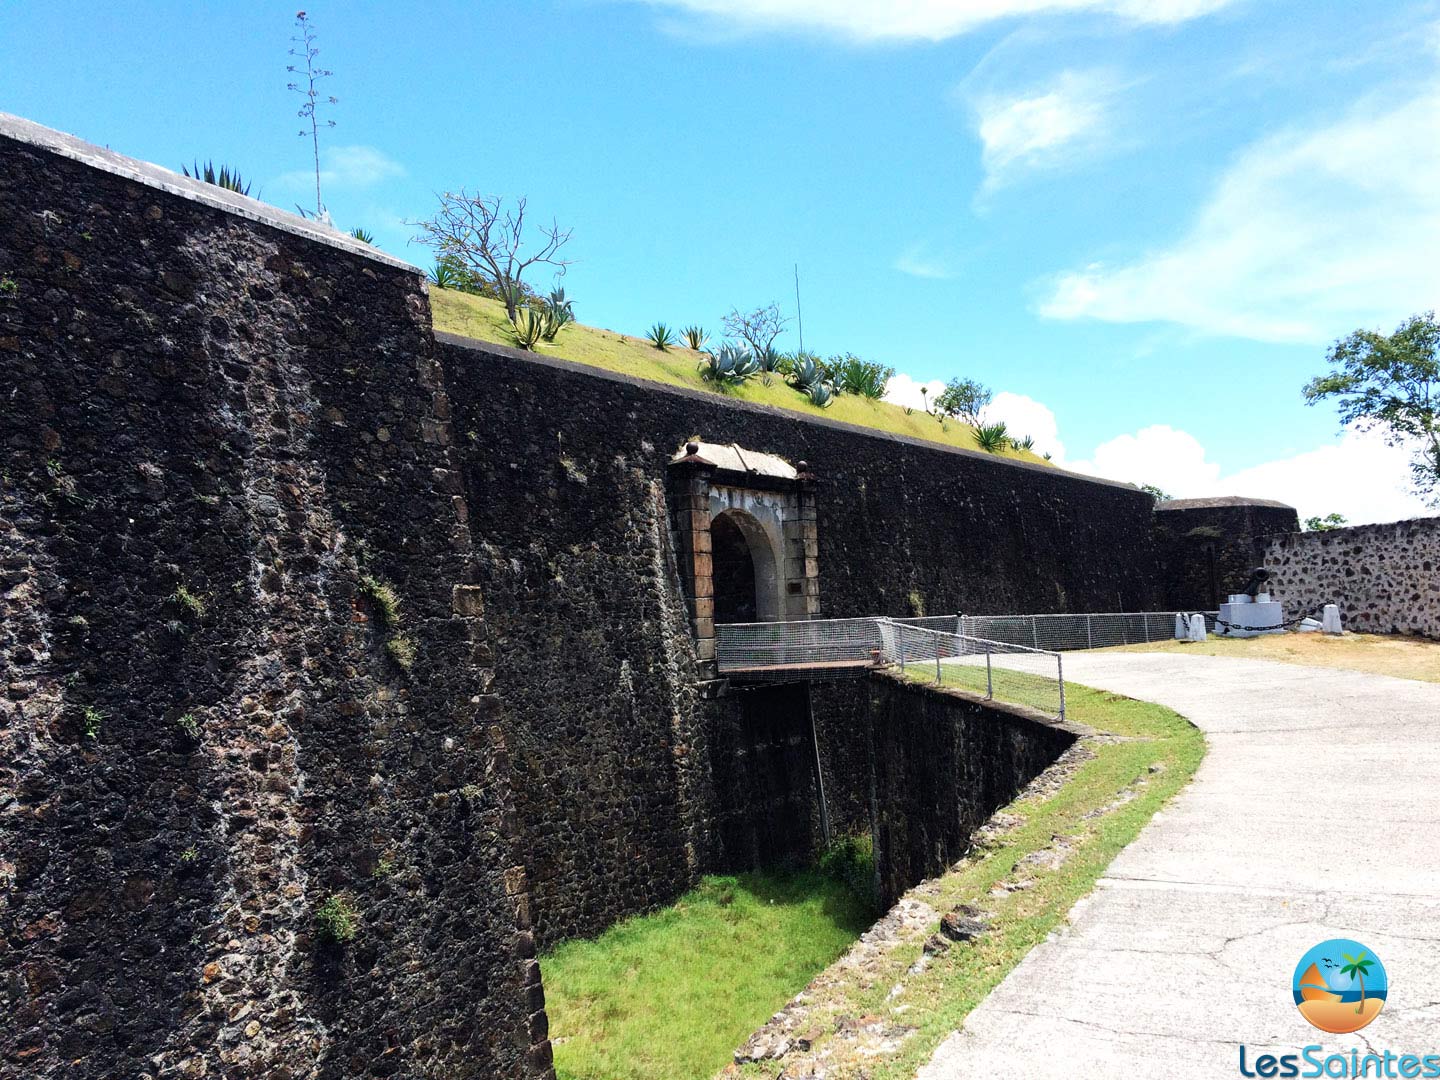 Les fortifications du fort napoléon